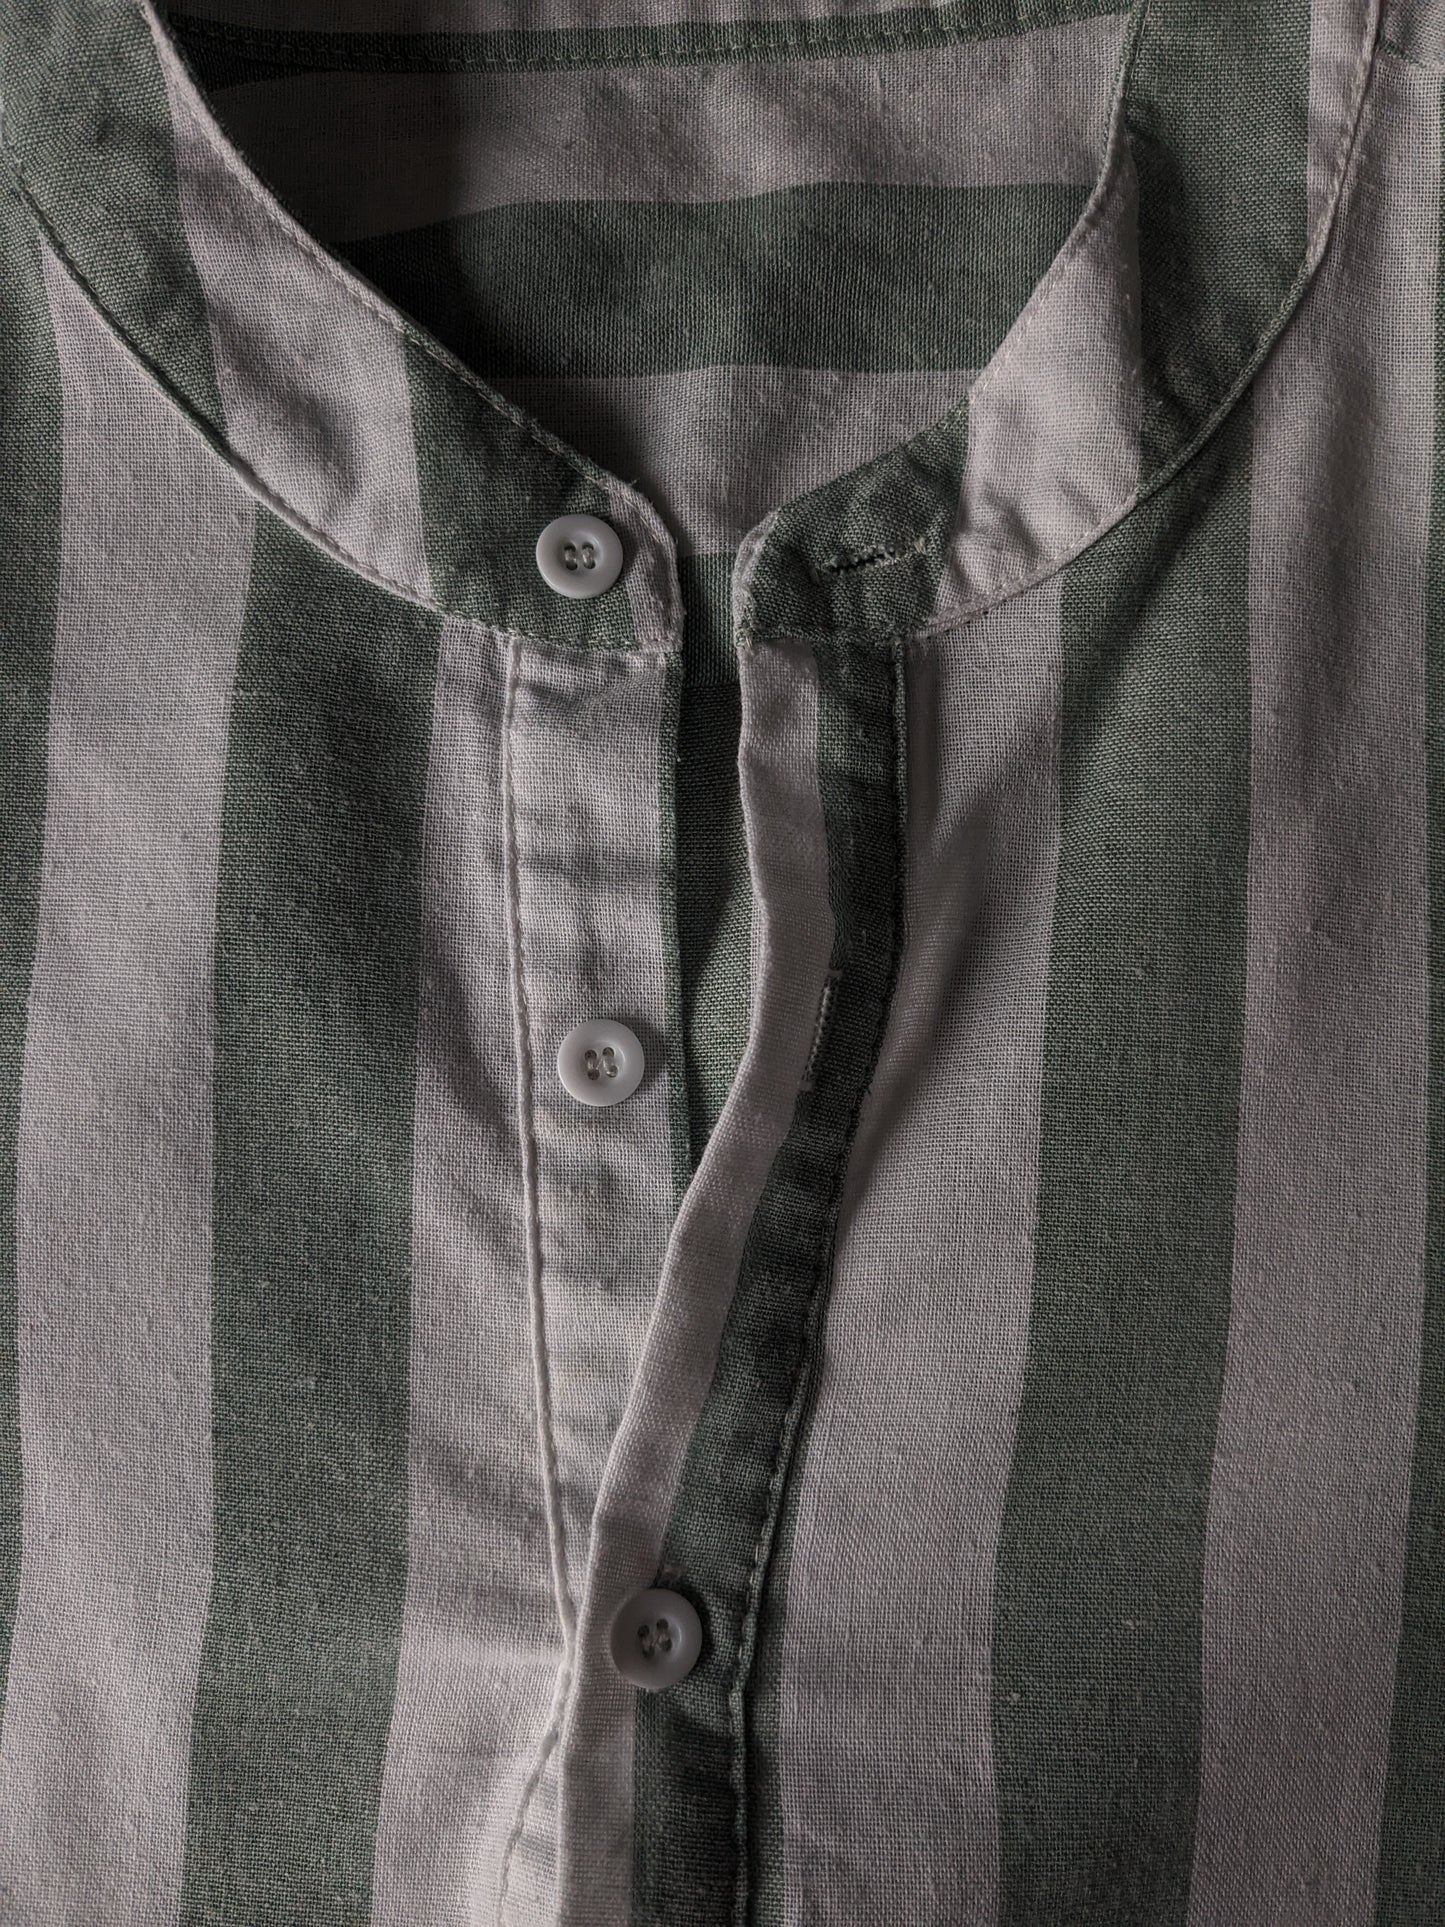 Camisa sin marca Camisa con agricultores / collar elevado / Mao. Blanco verde rayado. Tamaño M / L.